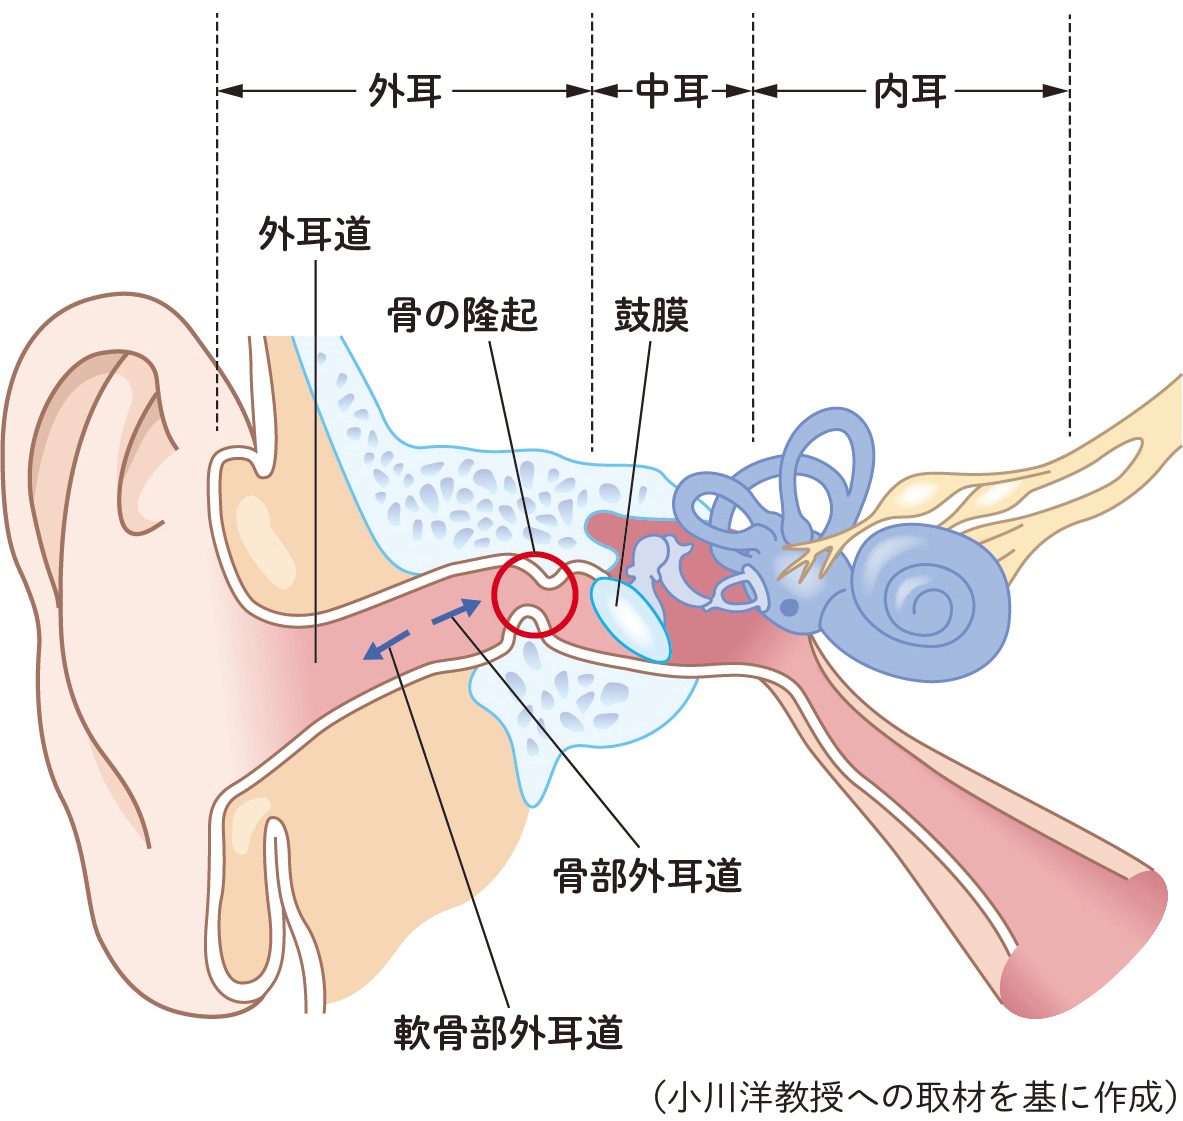 耳の構造と骨の隆起